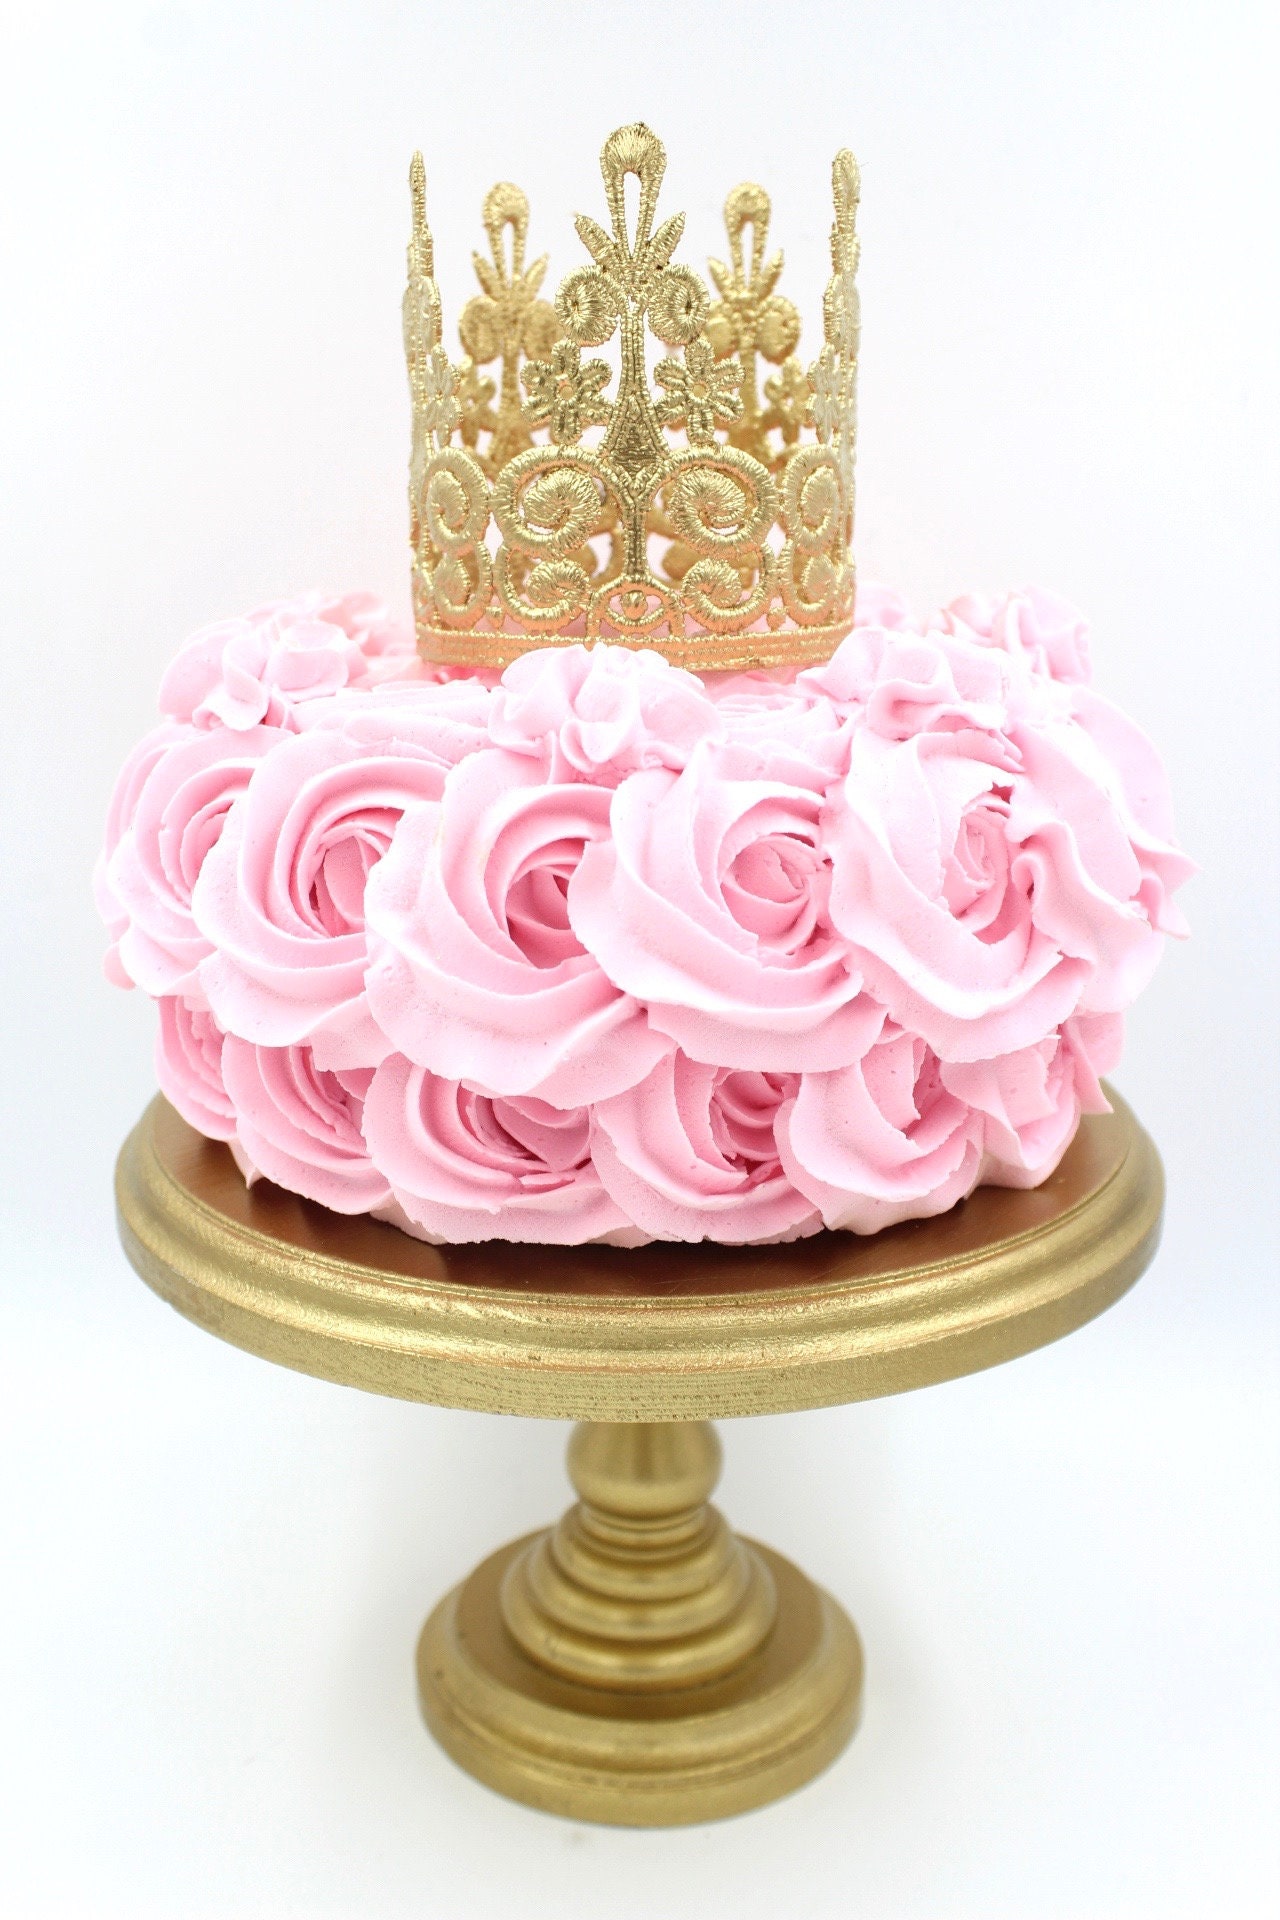 Tian Sweet 34025-RG 11 oz Large Rose Gold Crown Cake Topper, 1 - Harris  Teeter